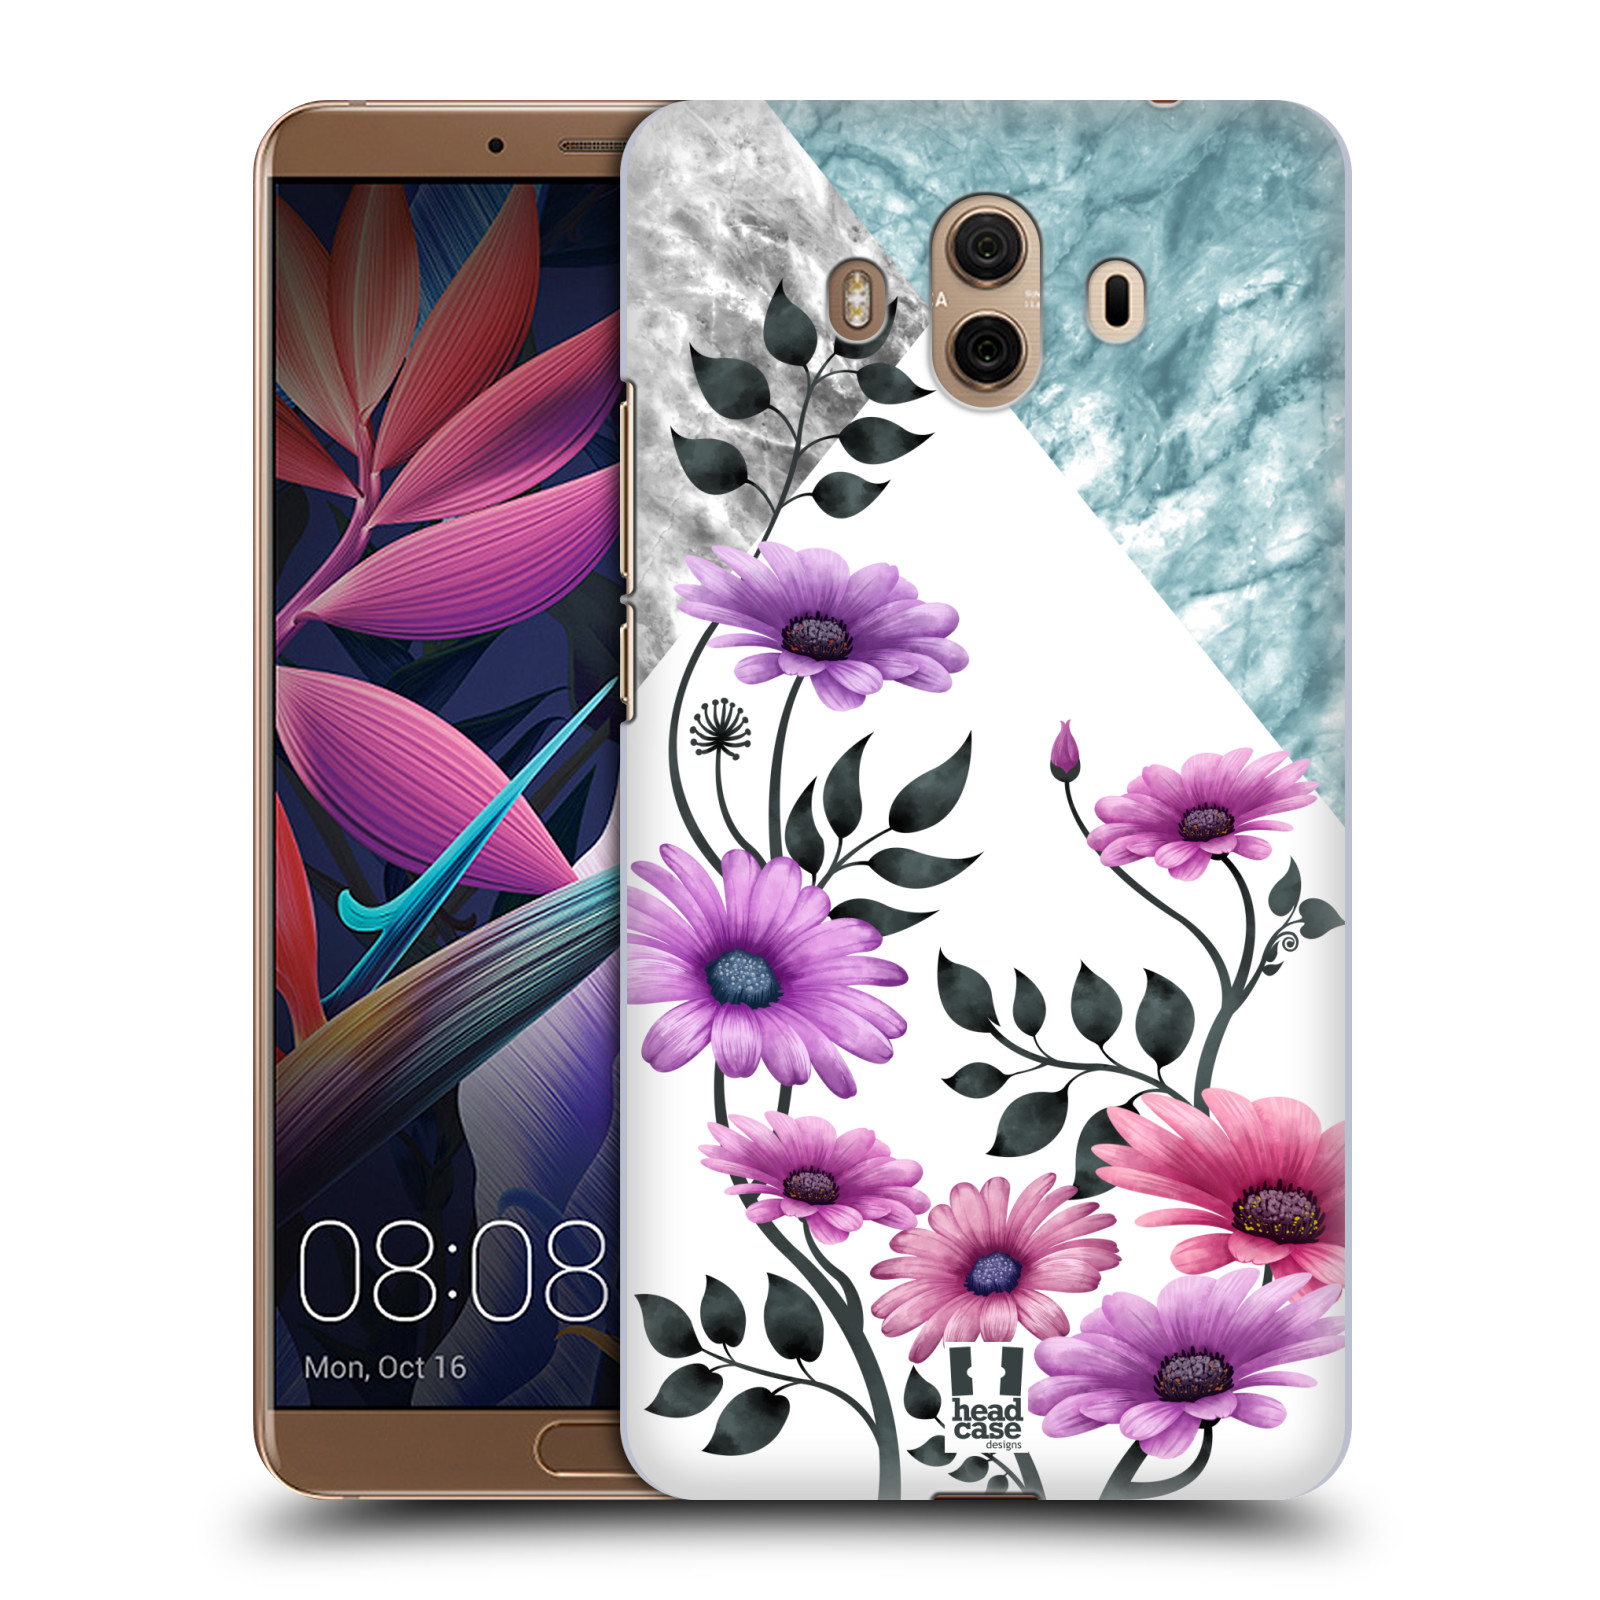 HEAD CASE plastový obal na mobil Huawei Mate 10 květiny hvězdnice, Aster fialová a modrá